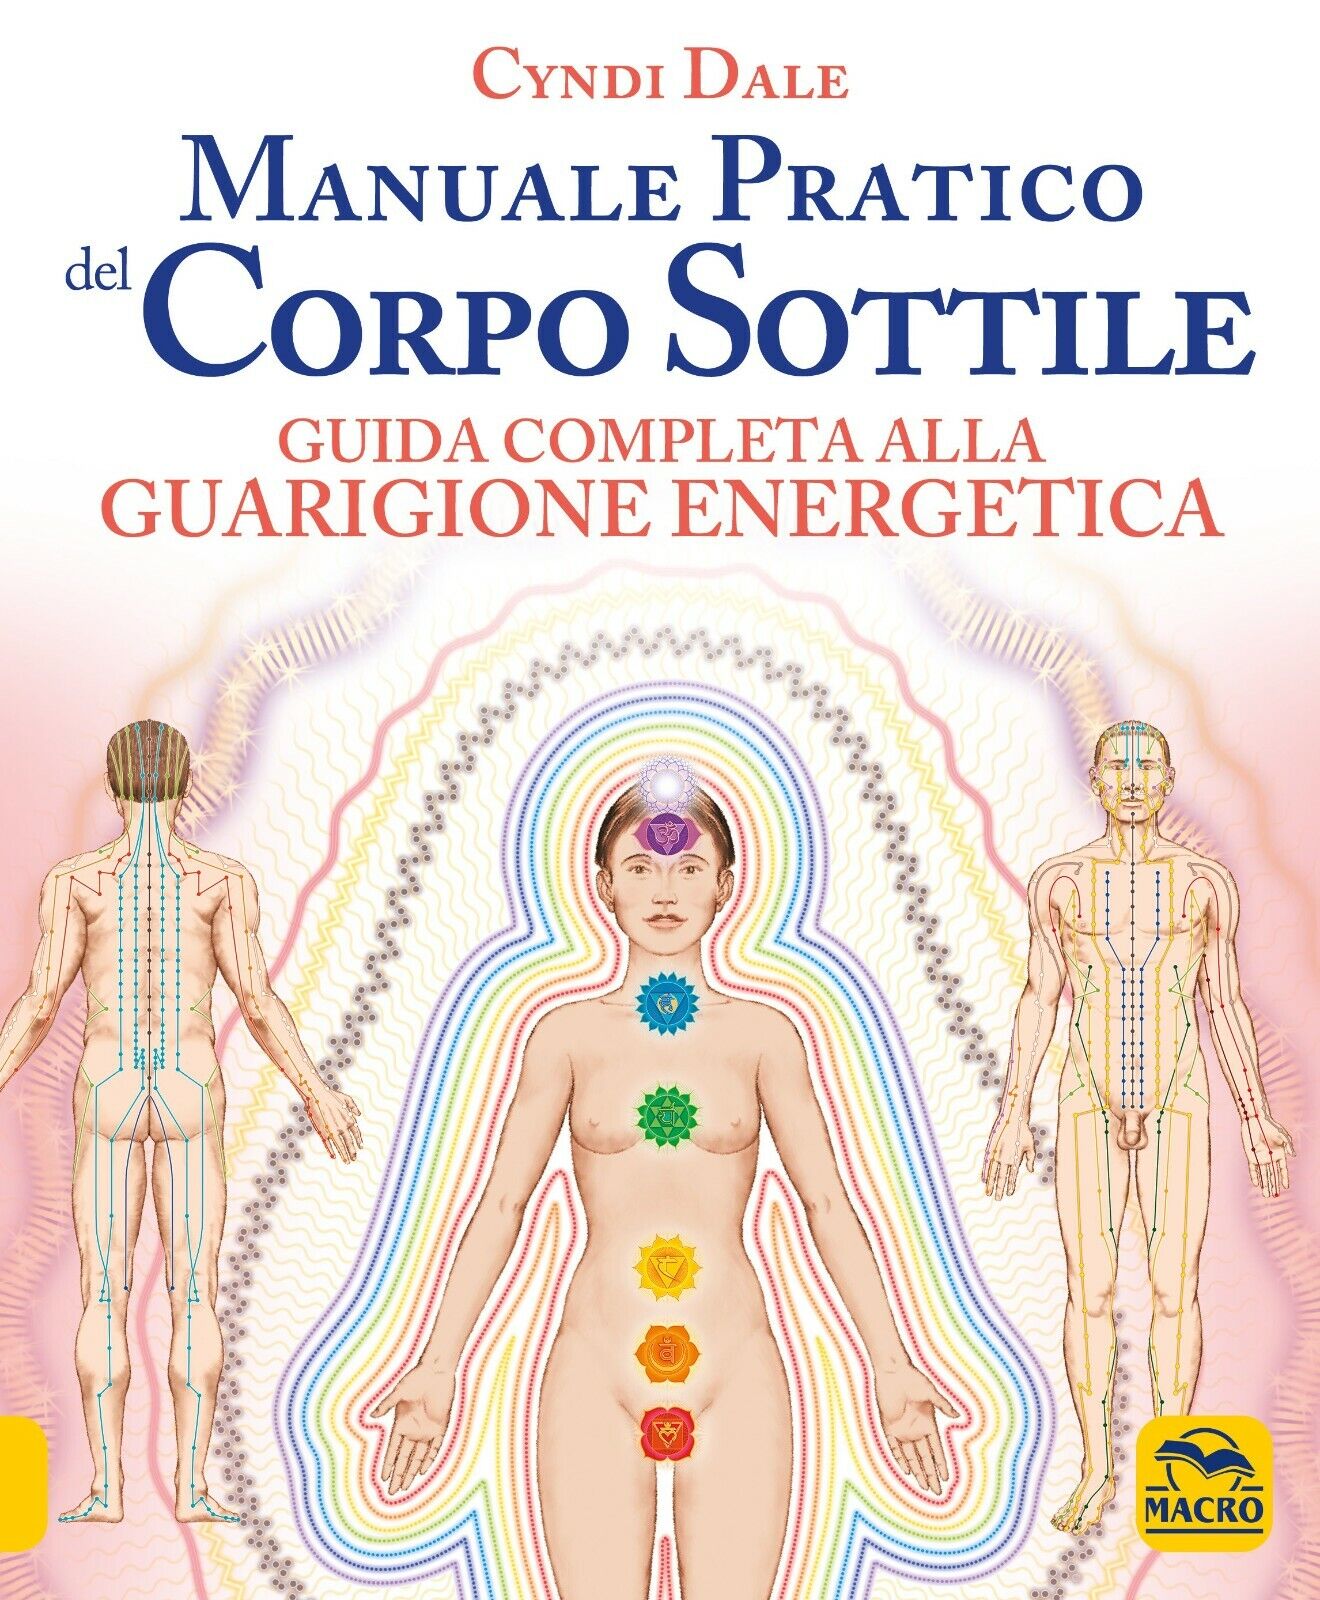 Manuale pratico del corpo sottile di Cyndi Dale,  2021,  Macro Edizioni libro usato